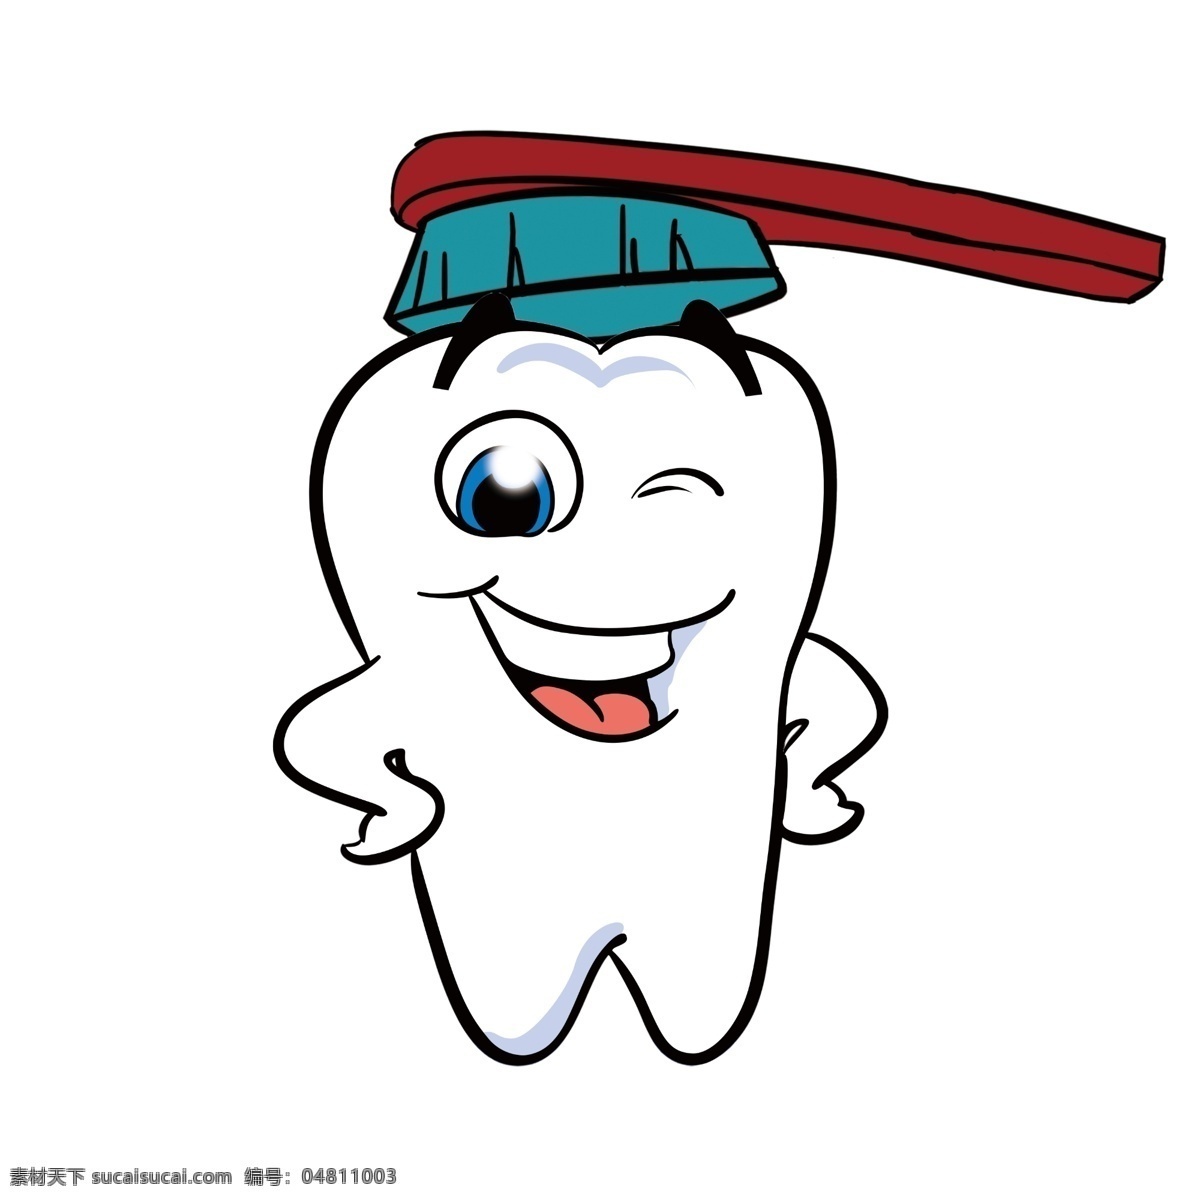 卡通牙齿 牙齿 牙刷 卡通 清洁 干净 动漫动画